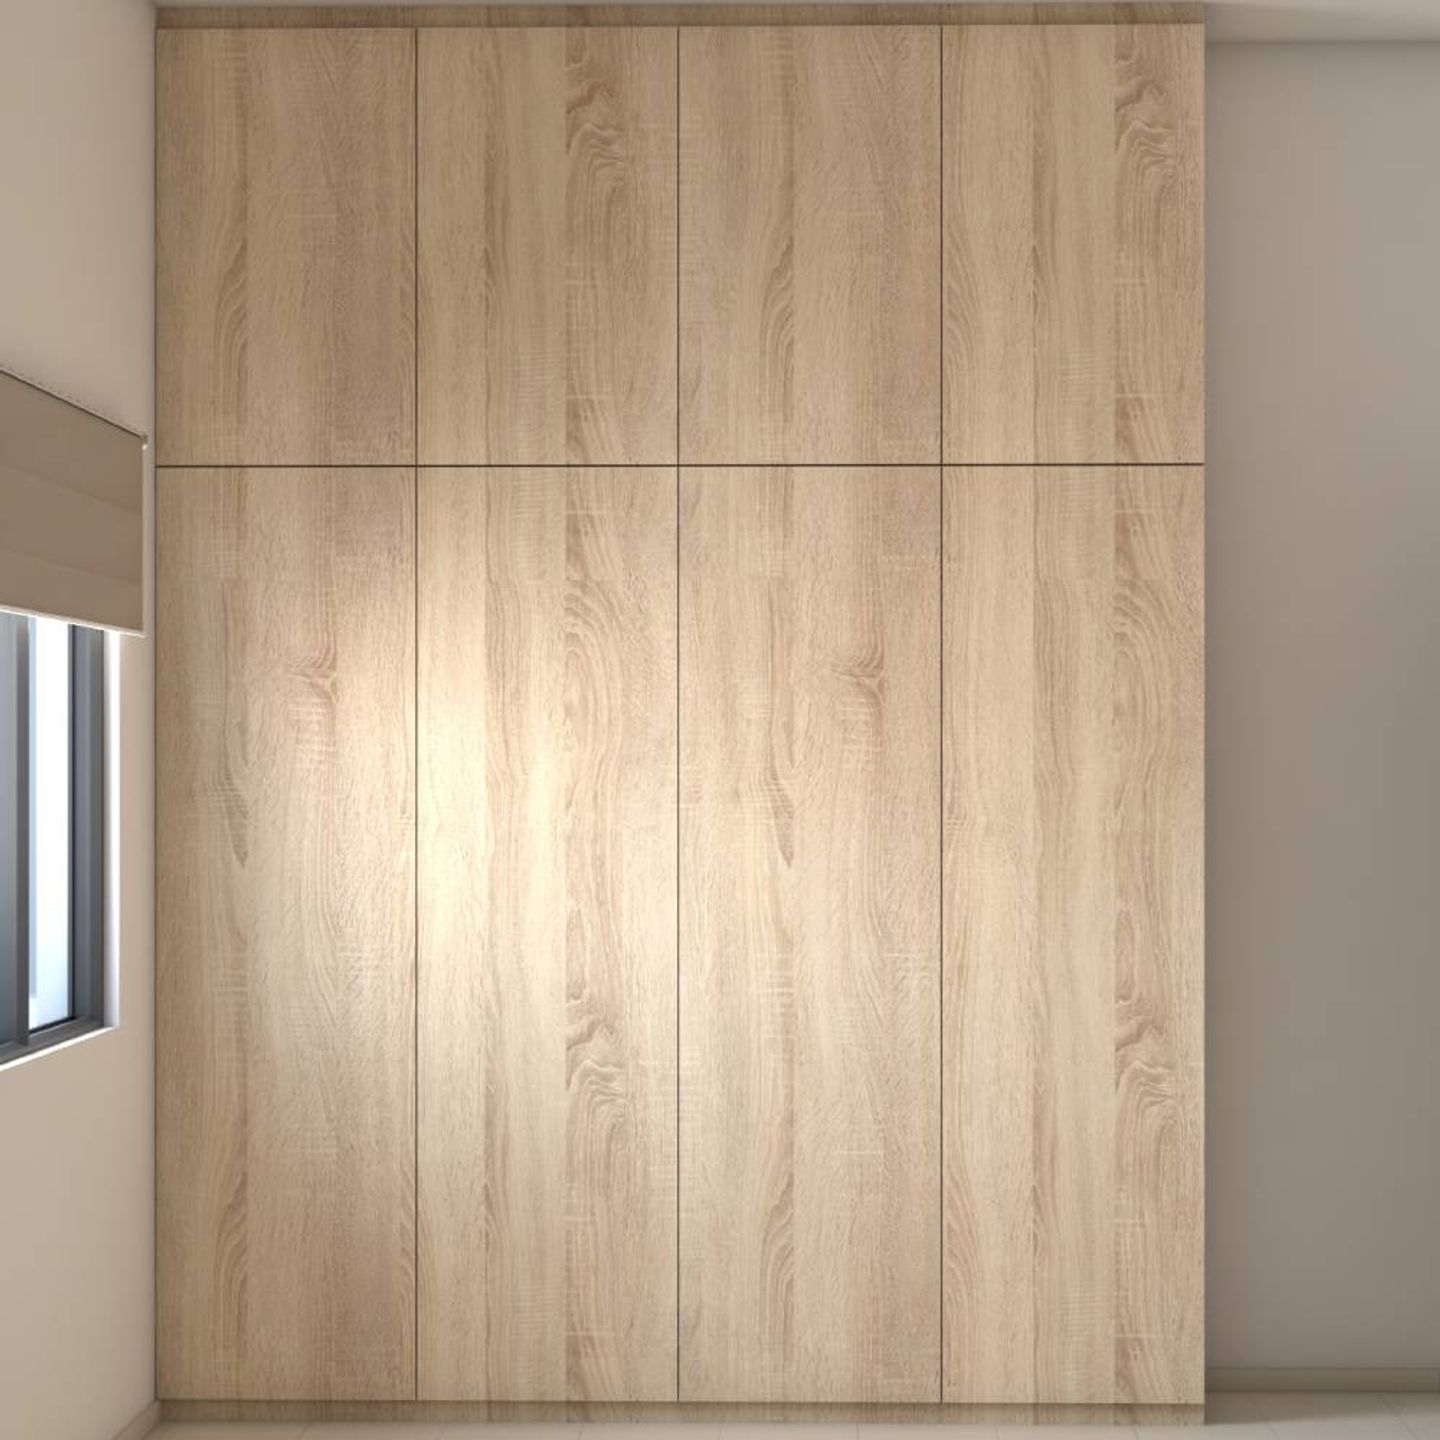 4-Door Wooden Swing Wardrobe Design With Loft Storage - Livspace